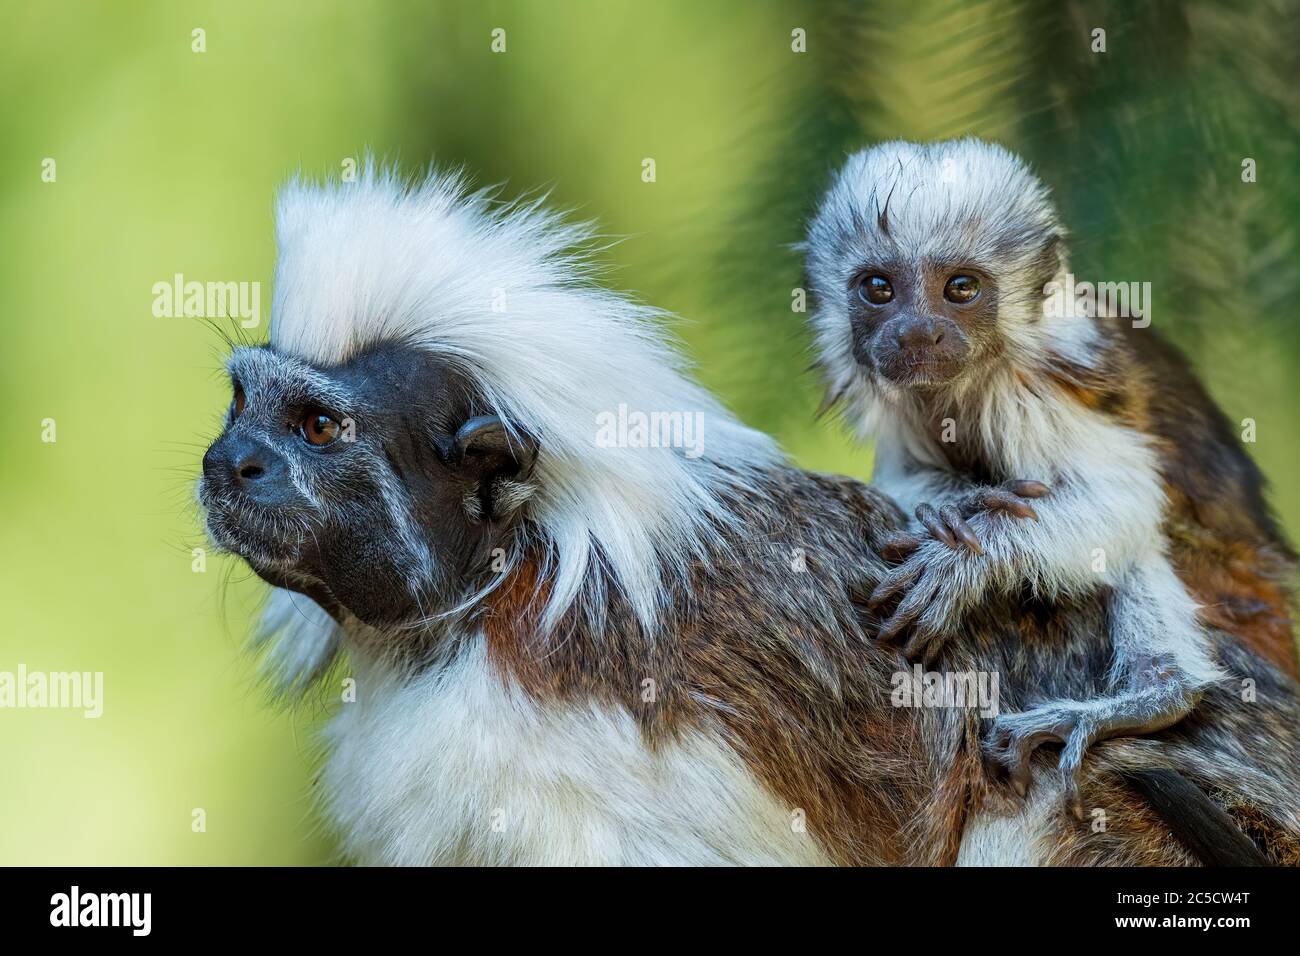 Tamarin - Saguinus oedipus, ein schöner kleiner Primat aus südamerikanischen Tropenwäldern, Kolumbien. Stockfoto